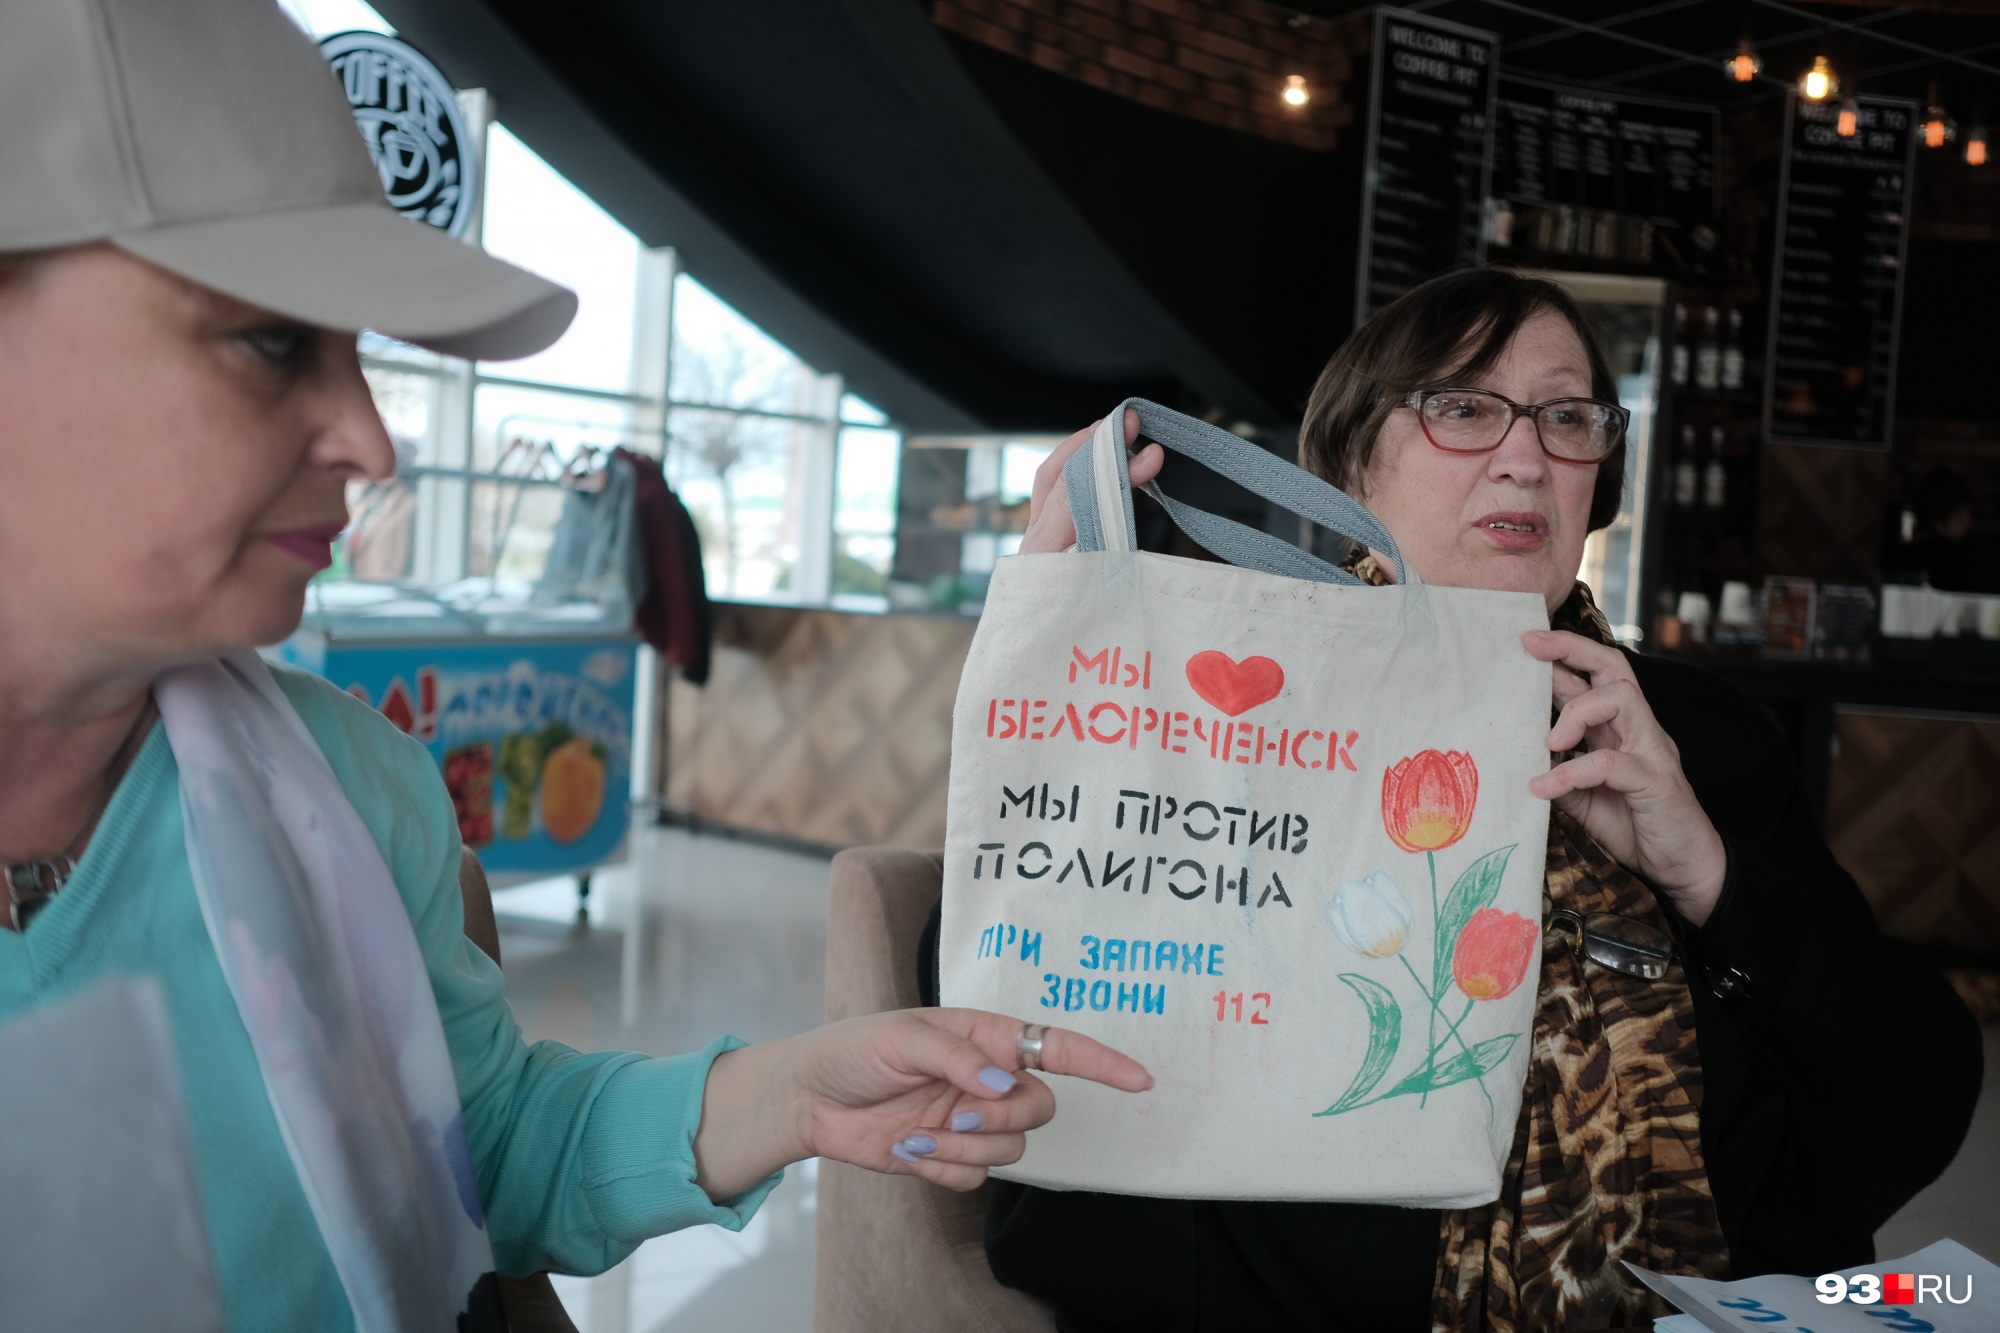 Лариса Васильевна носит сумку, которую сделала другая местная жительница. Шопперы она продает по себестоимости